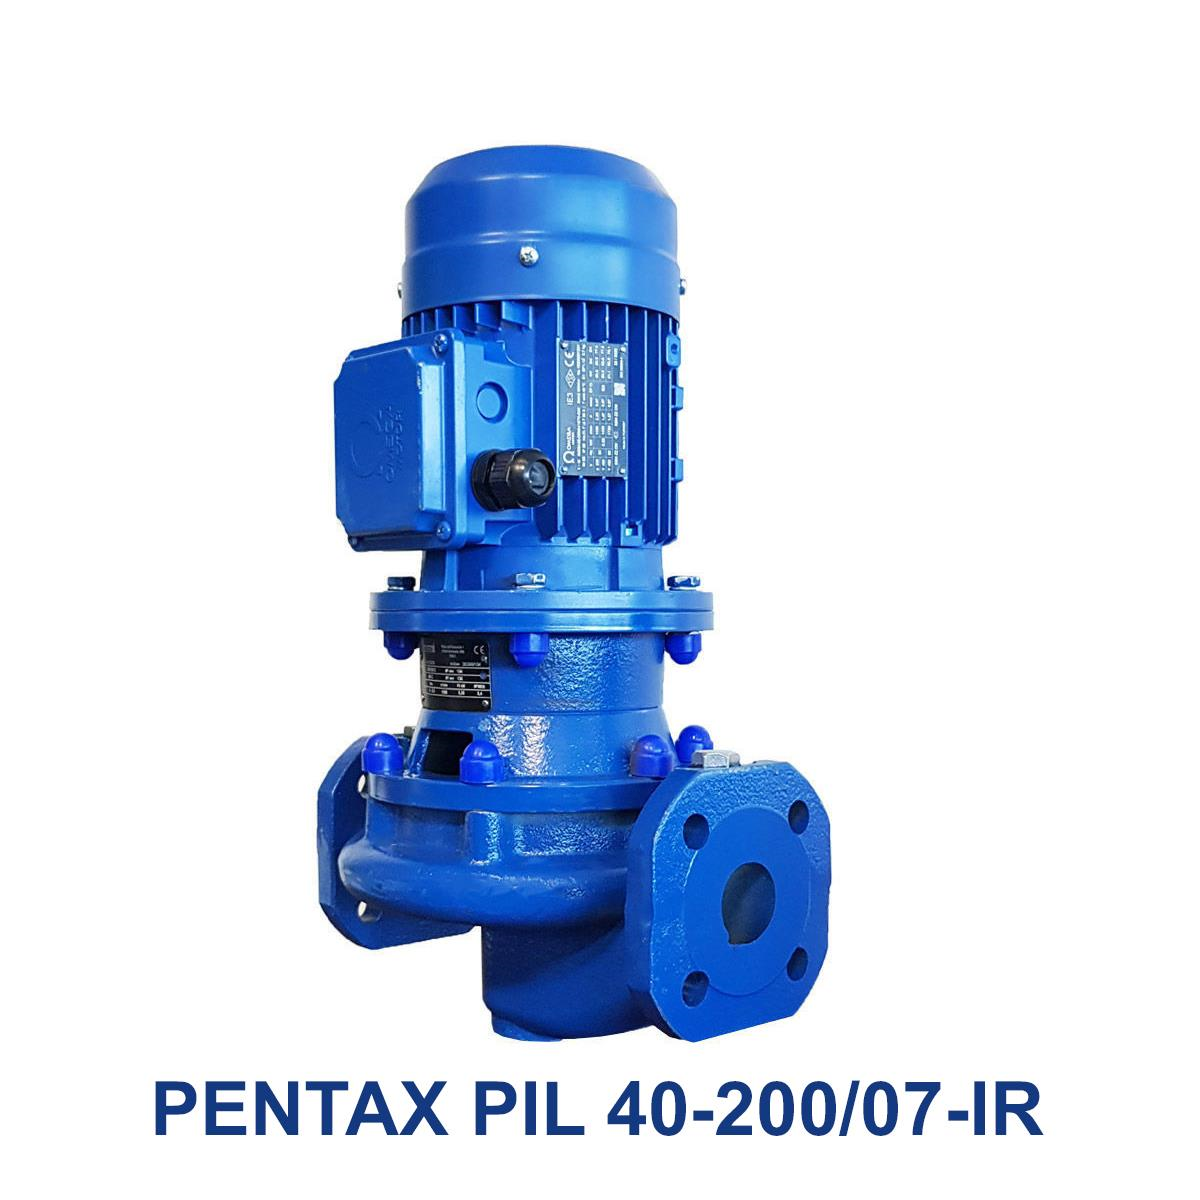 PENTAX-PIL-40-200-07-IR